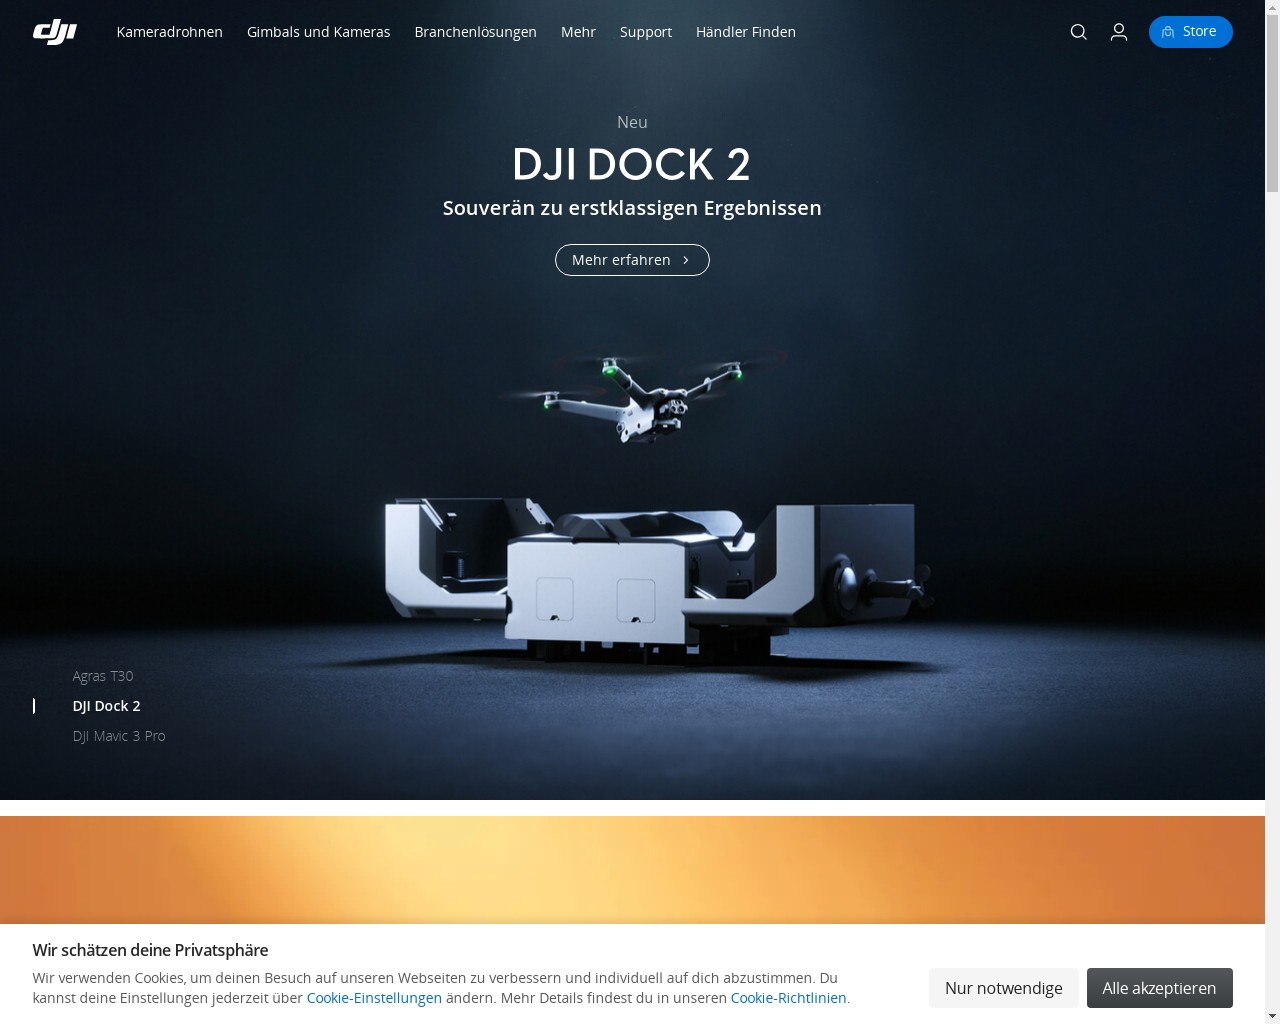 DJI – компания, которая является одним из ведущих производителей дронов в мире